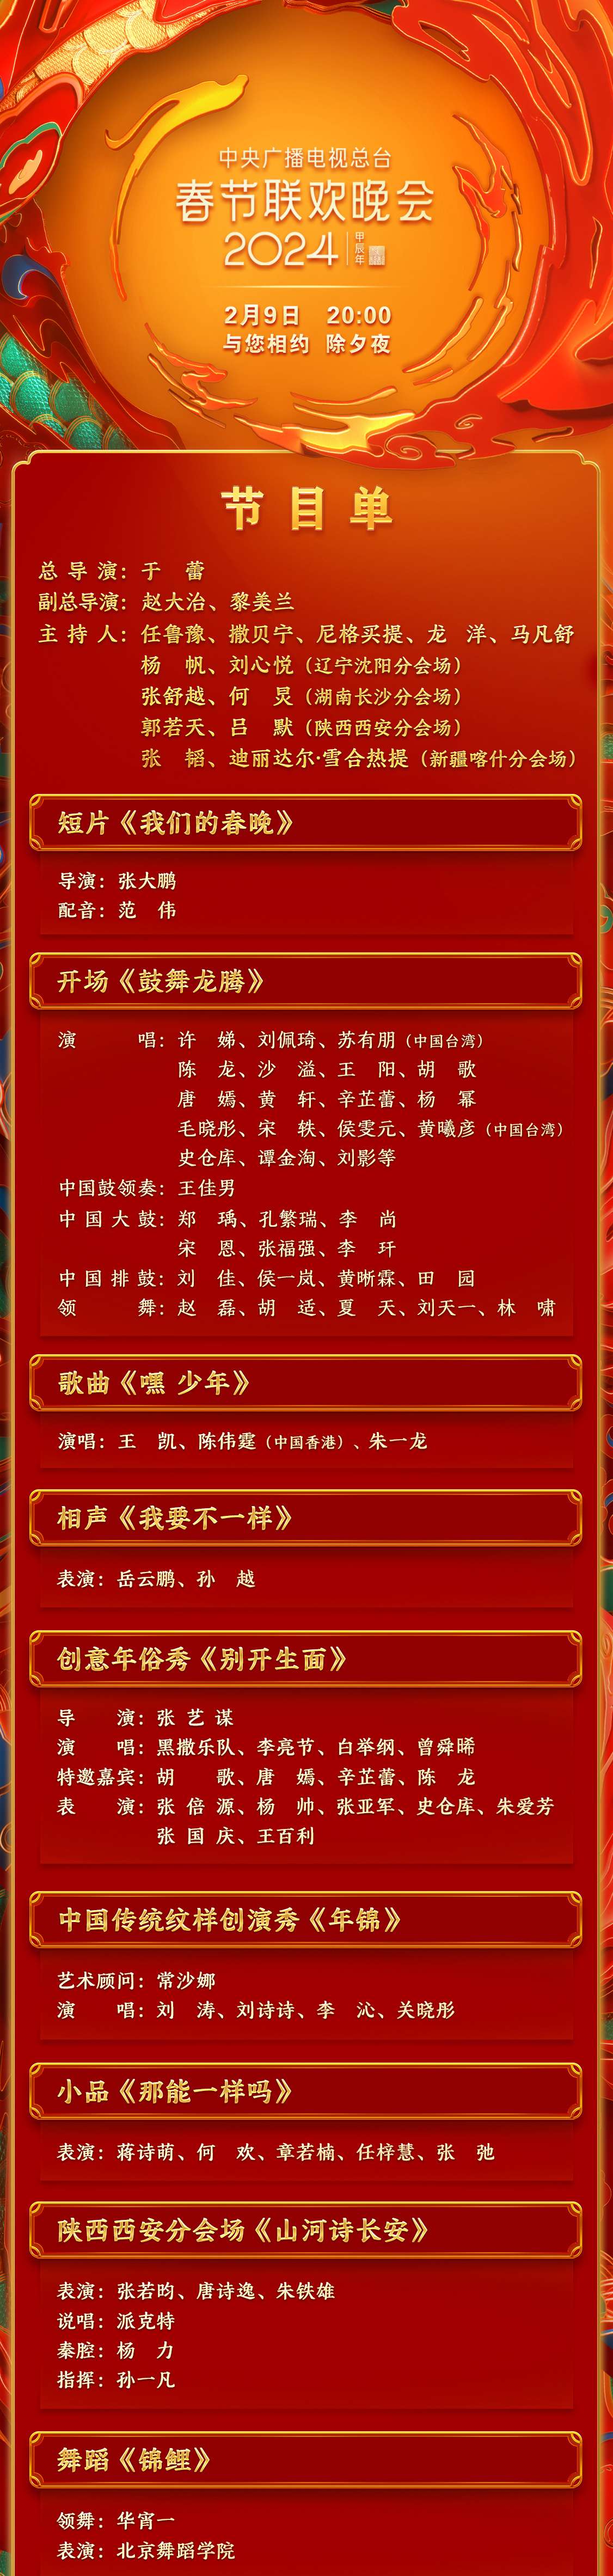 中央广播电视总台《2024年春节联欢晚会》节目单发布